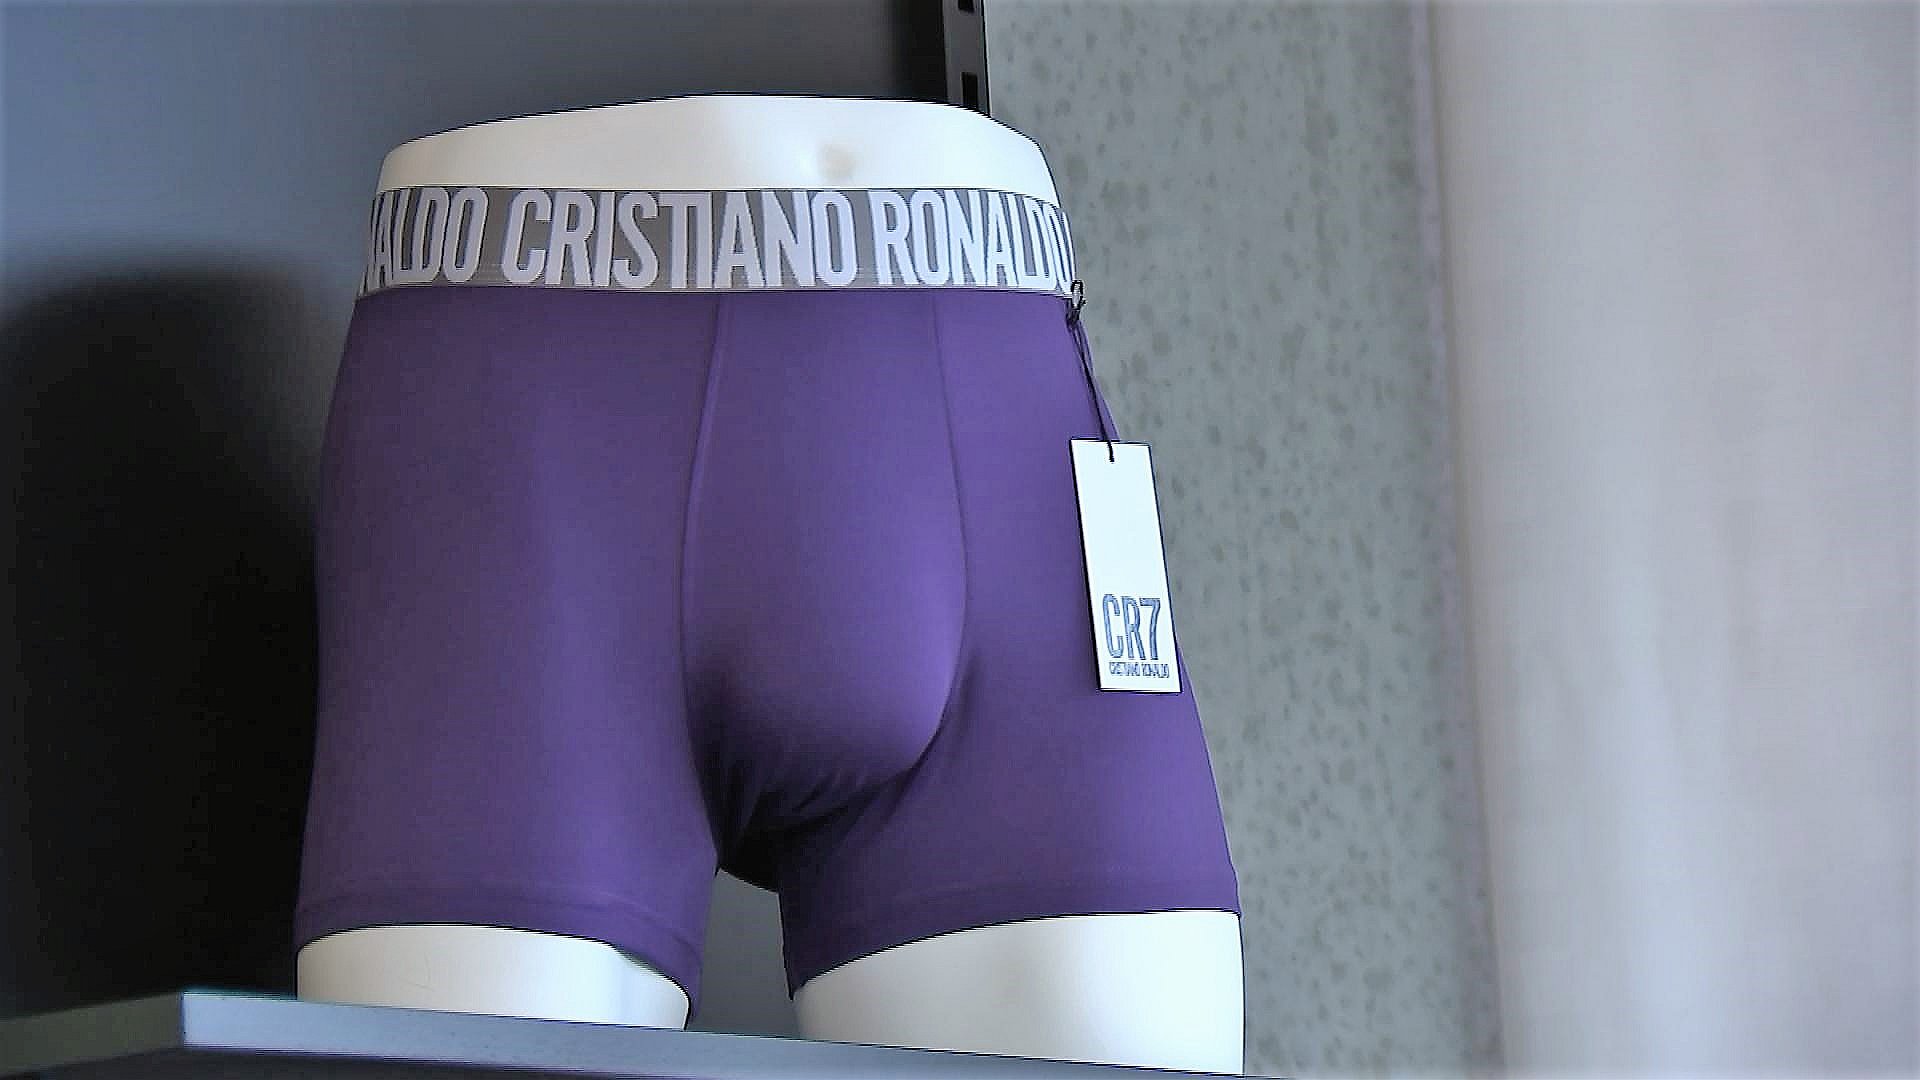 indsats undergrundsbane hegn Ronaldos klubskifte sætter gang i salget af underbukser | TV MIDTVEST